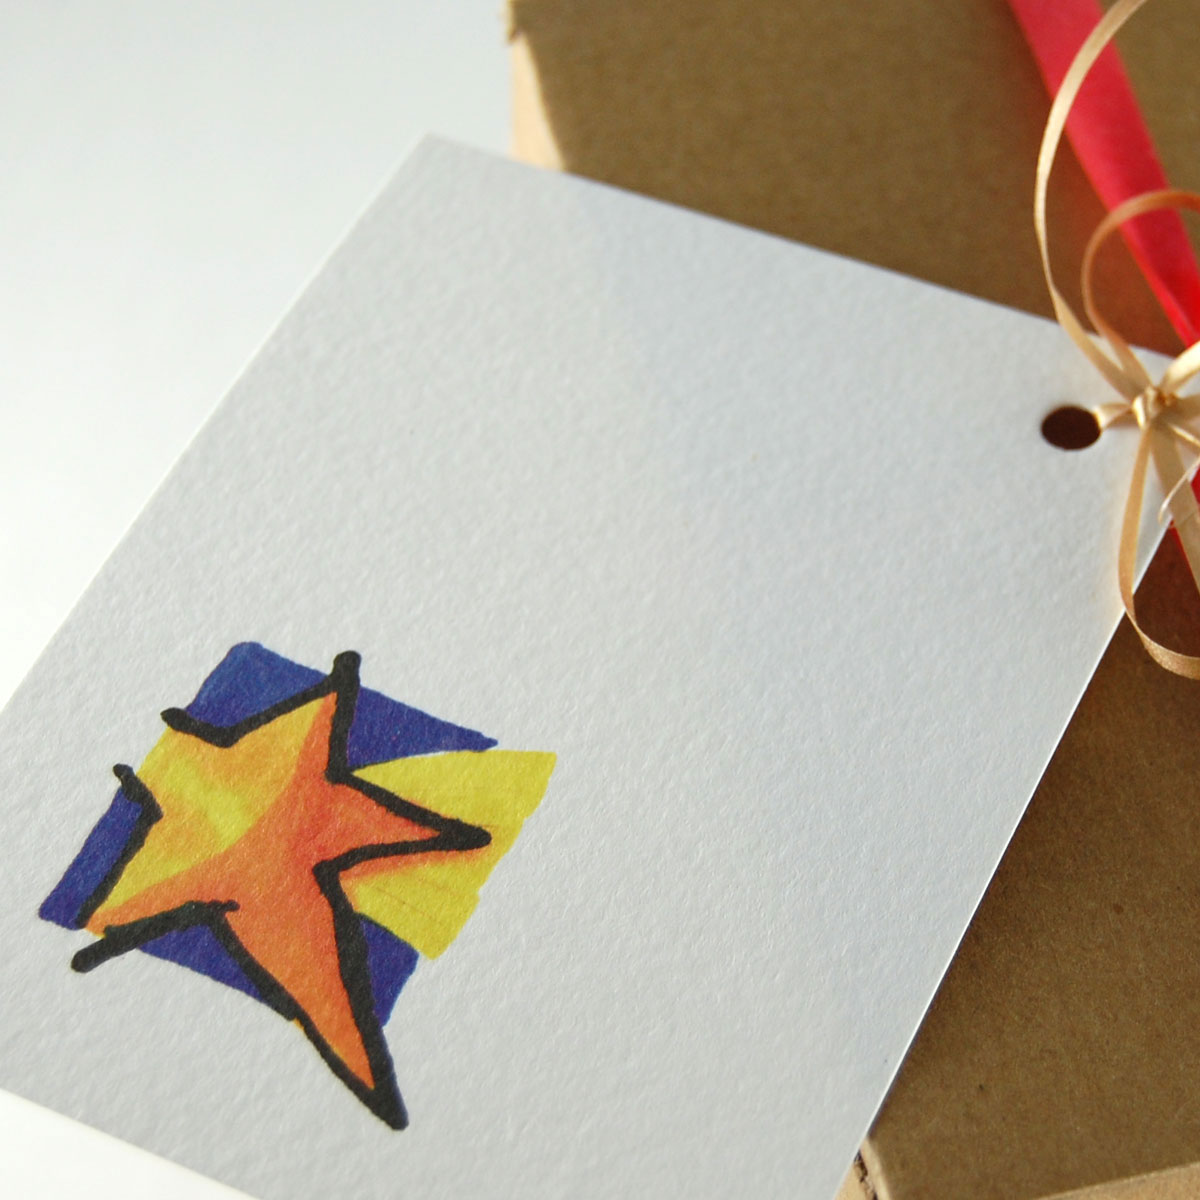 schöne Geschenkeanhänger für Weihnachten: Stern